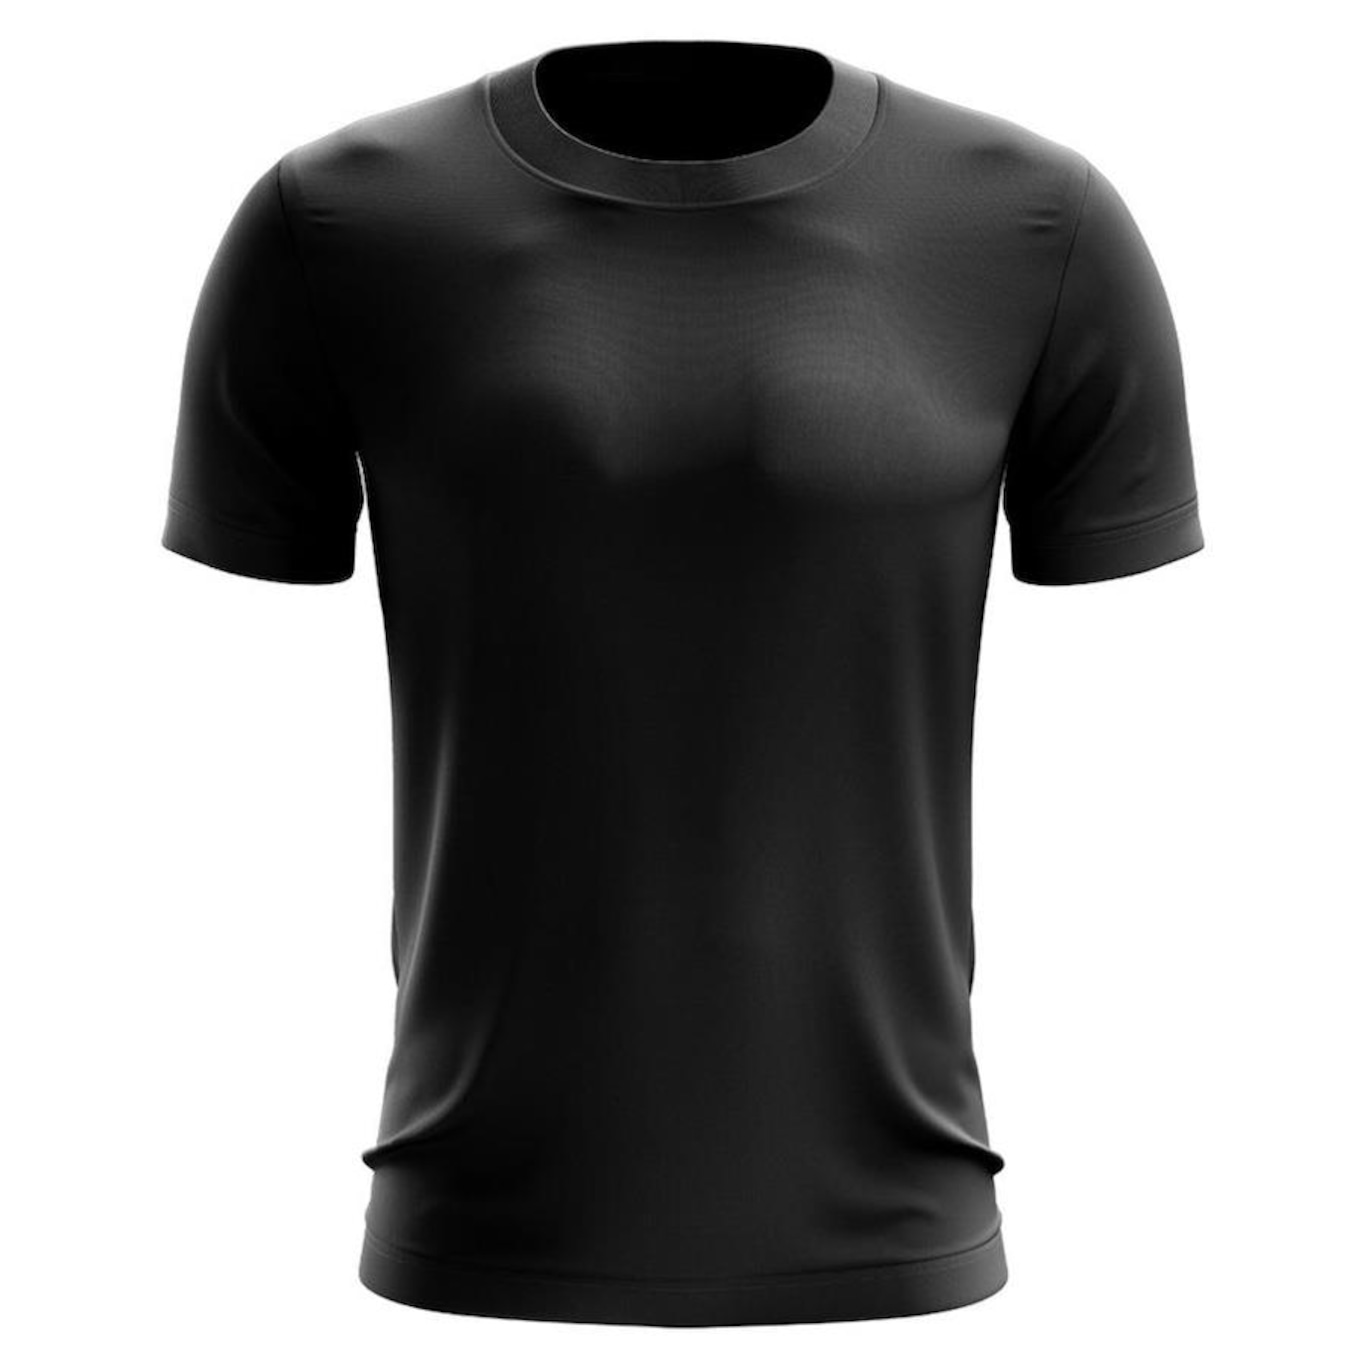 Camiseta Adriben Dry Fit Proteção Solar Uv Térmica - Masculina - Foto 1